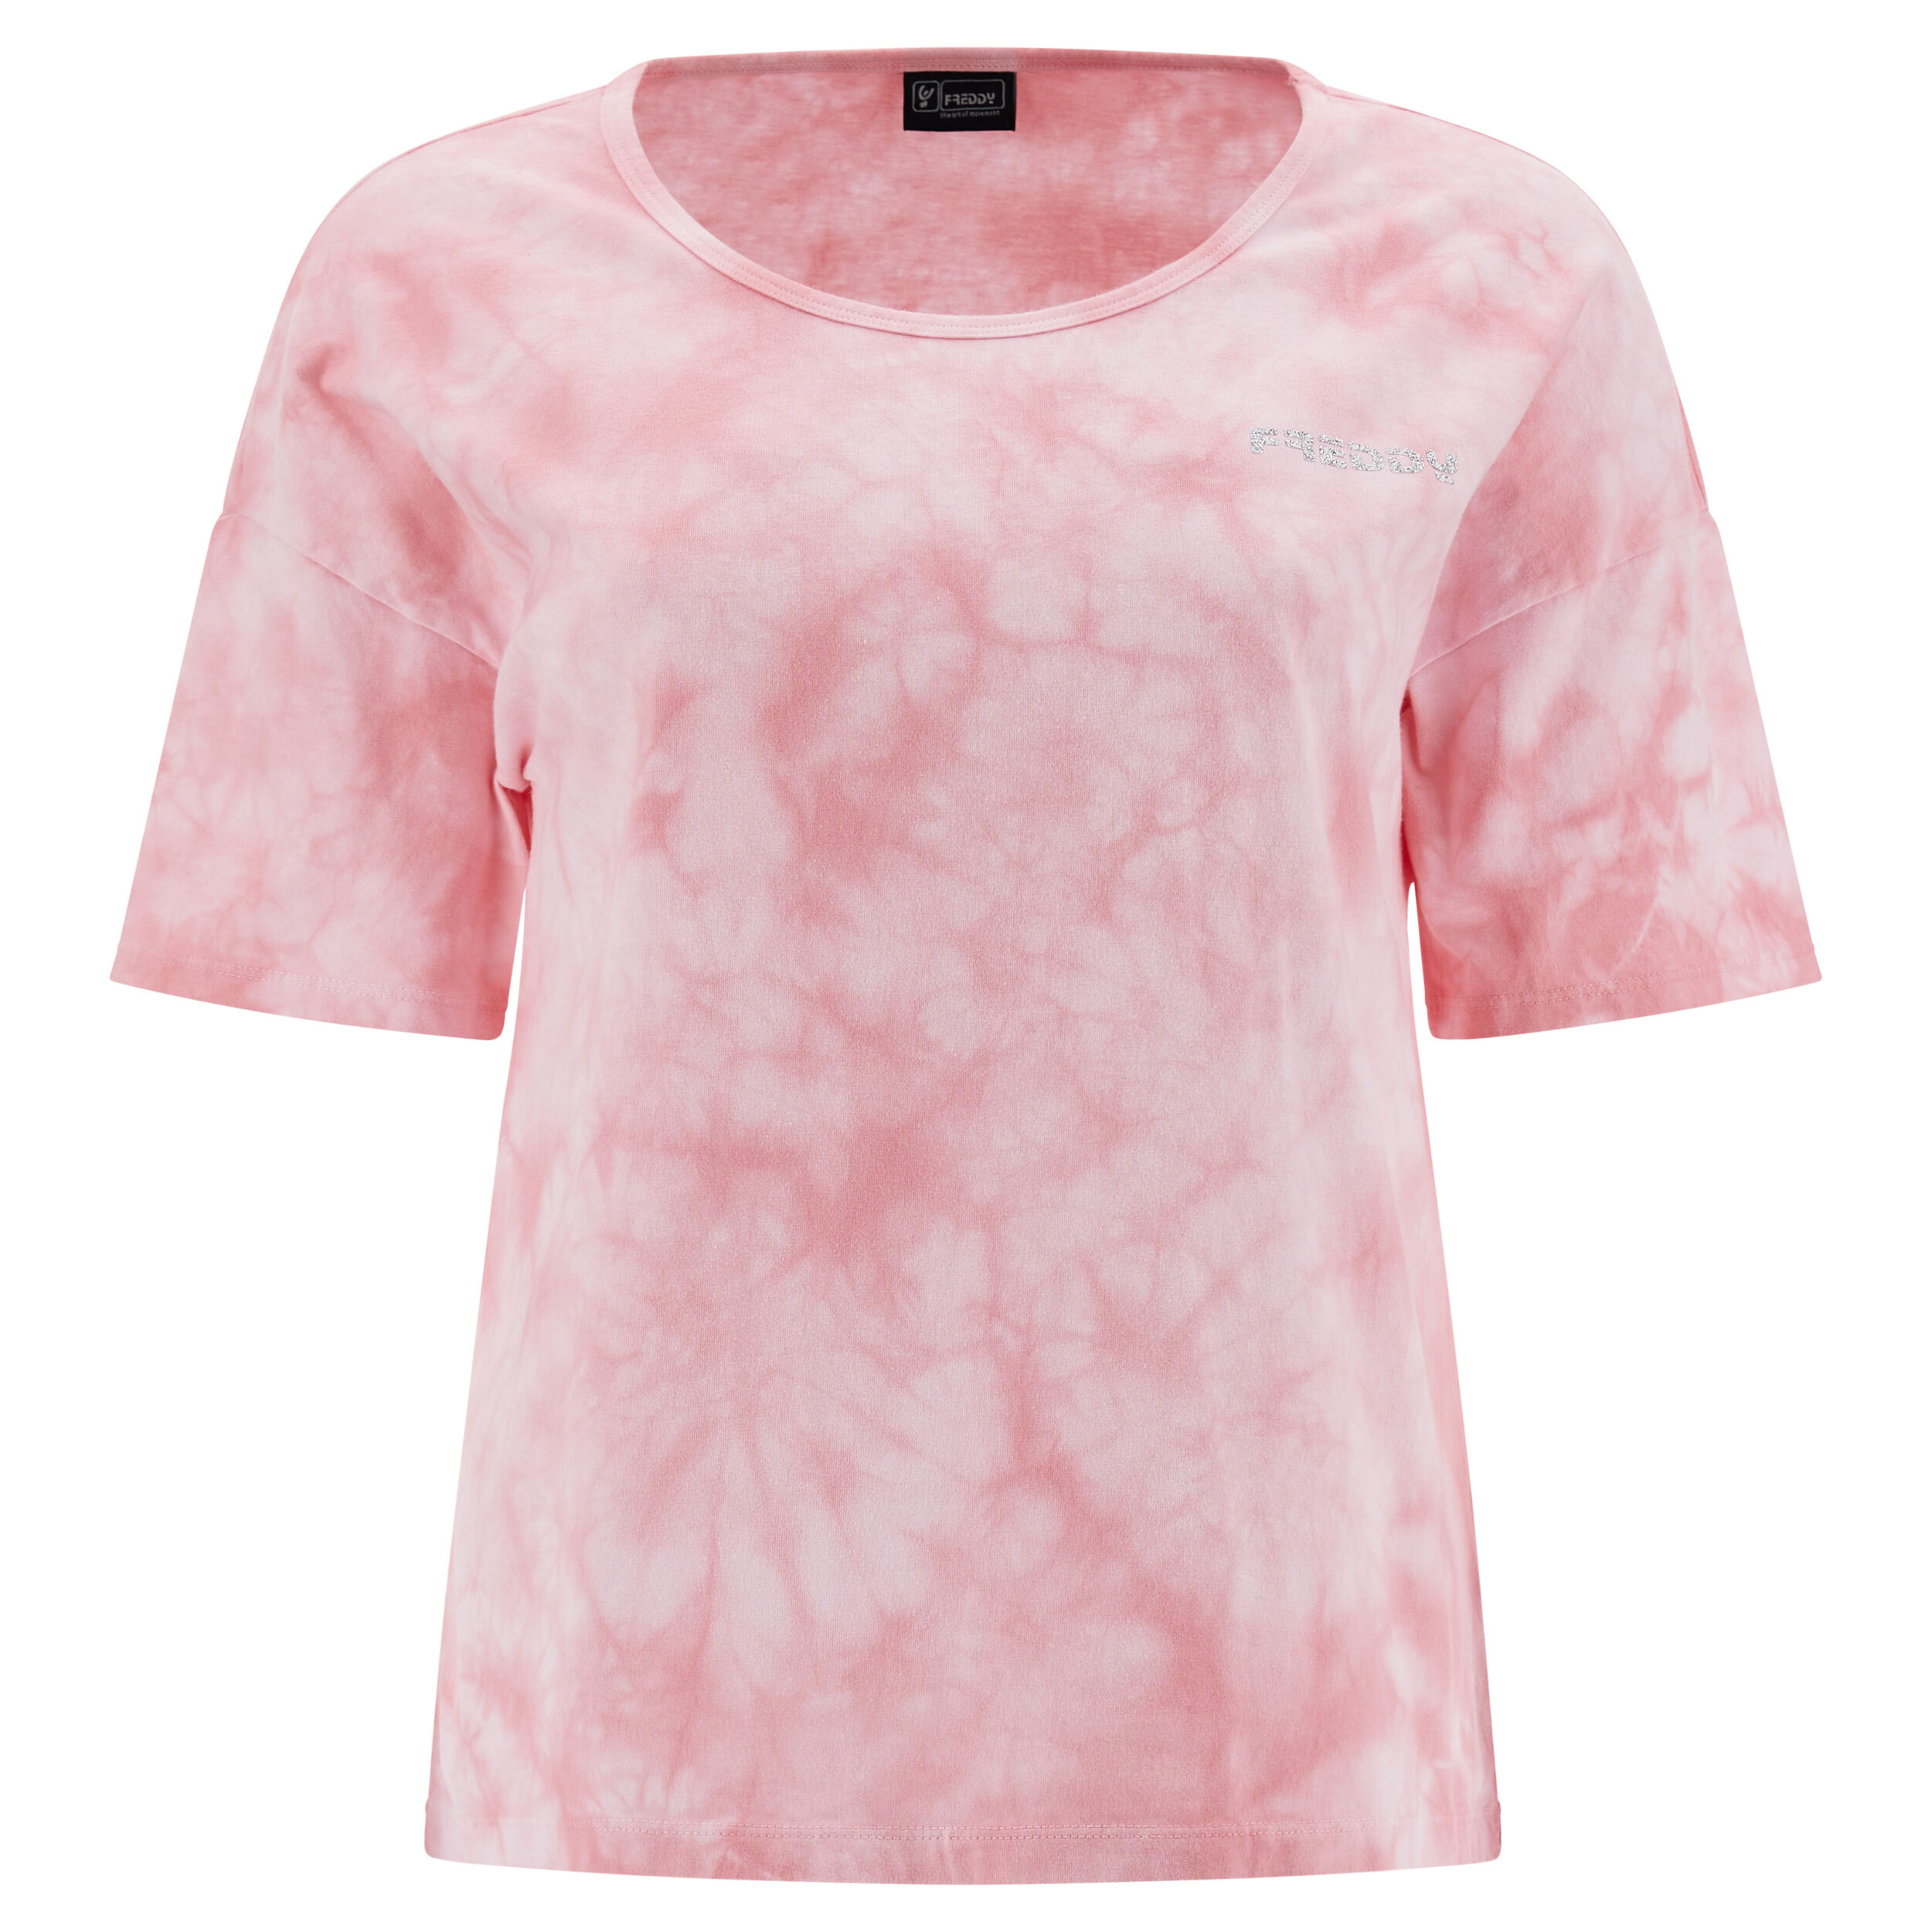 Freddy T-shirt comfort fit in jersey leggero tie dye Tie Dye Pink Donna Large